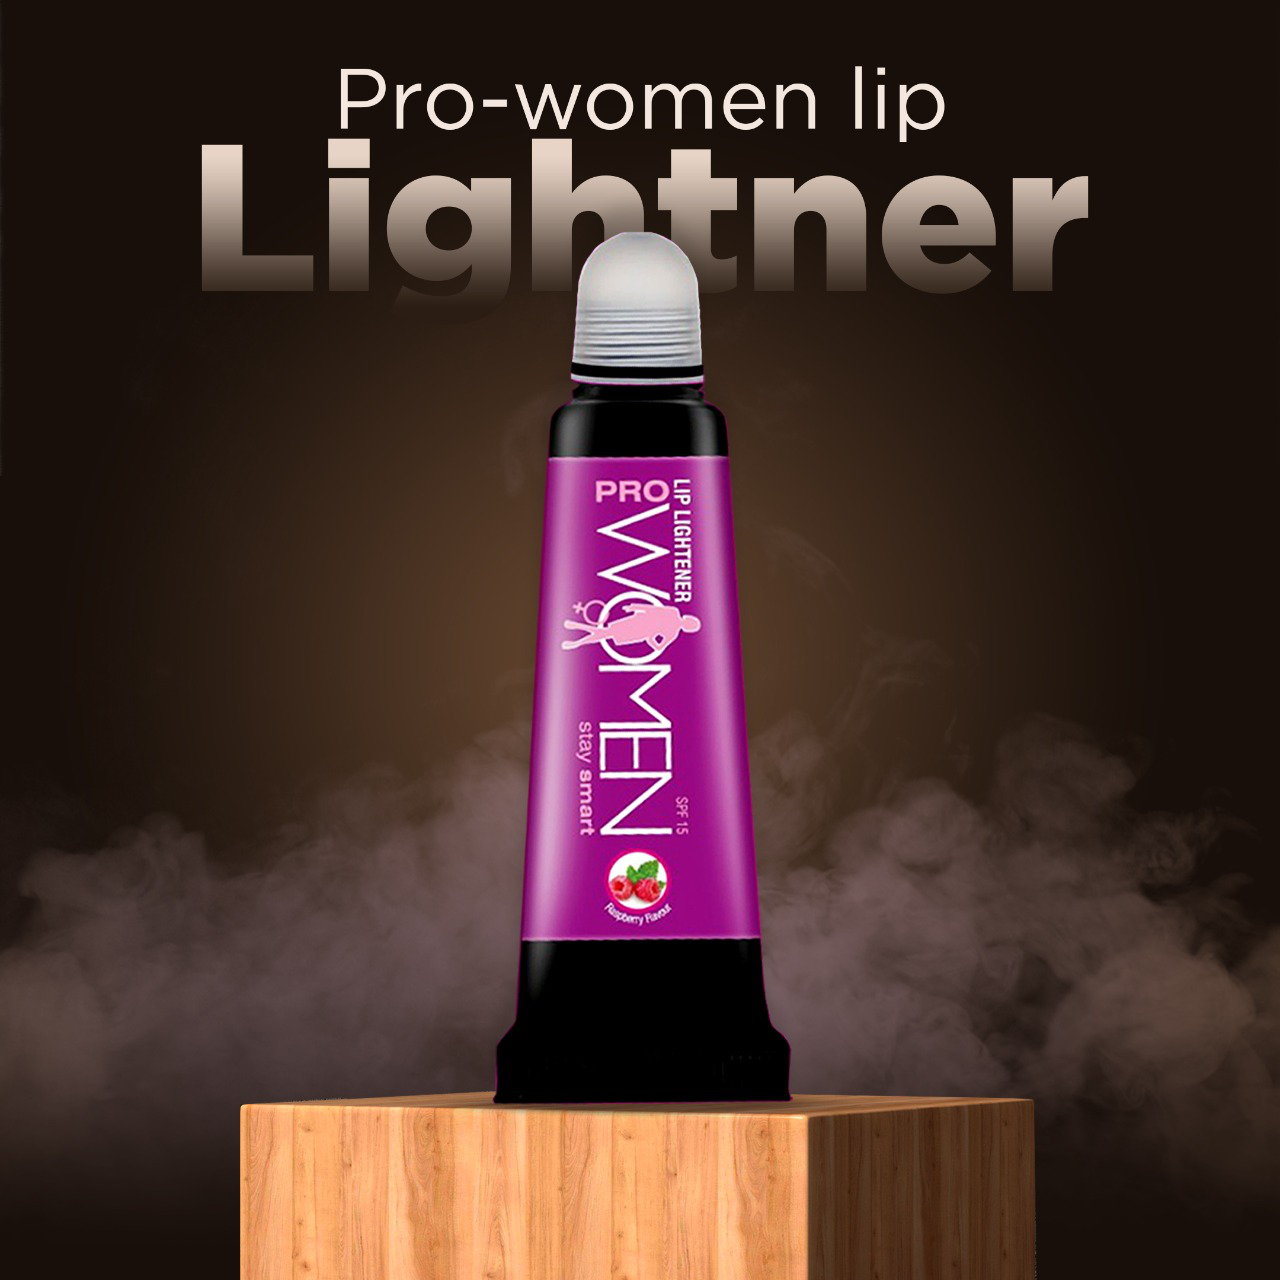 Lipstick Undercoat Prowomen Lip Lightener for Smokers 10 gms